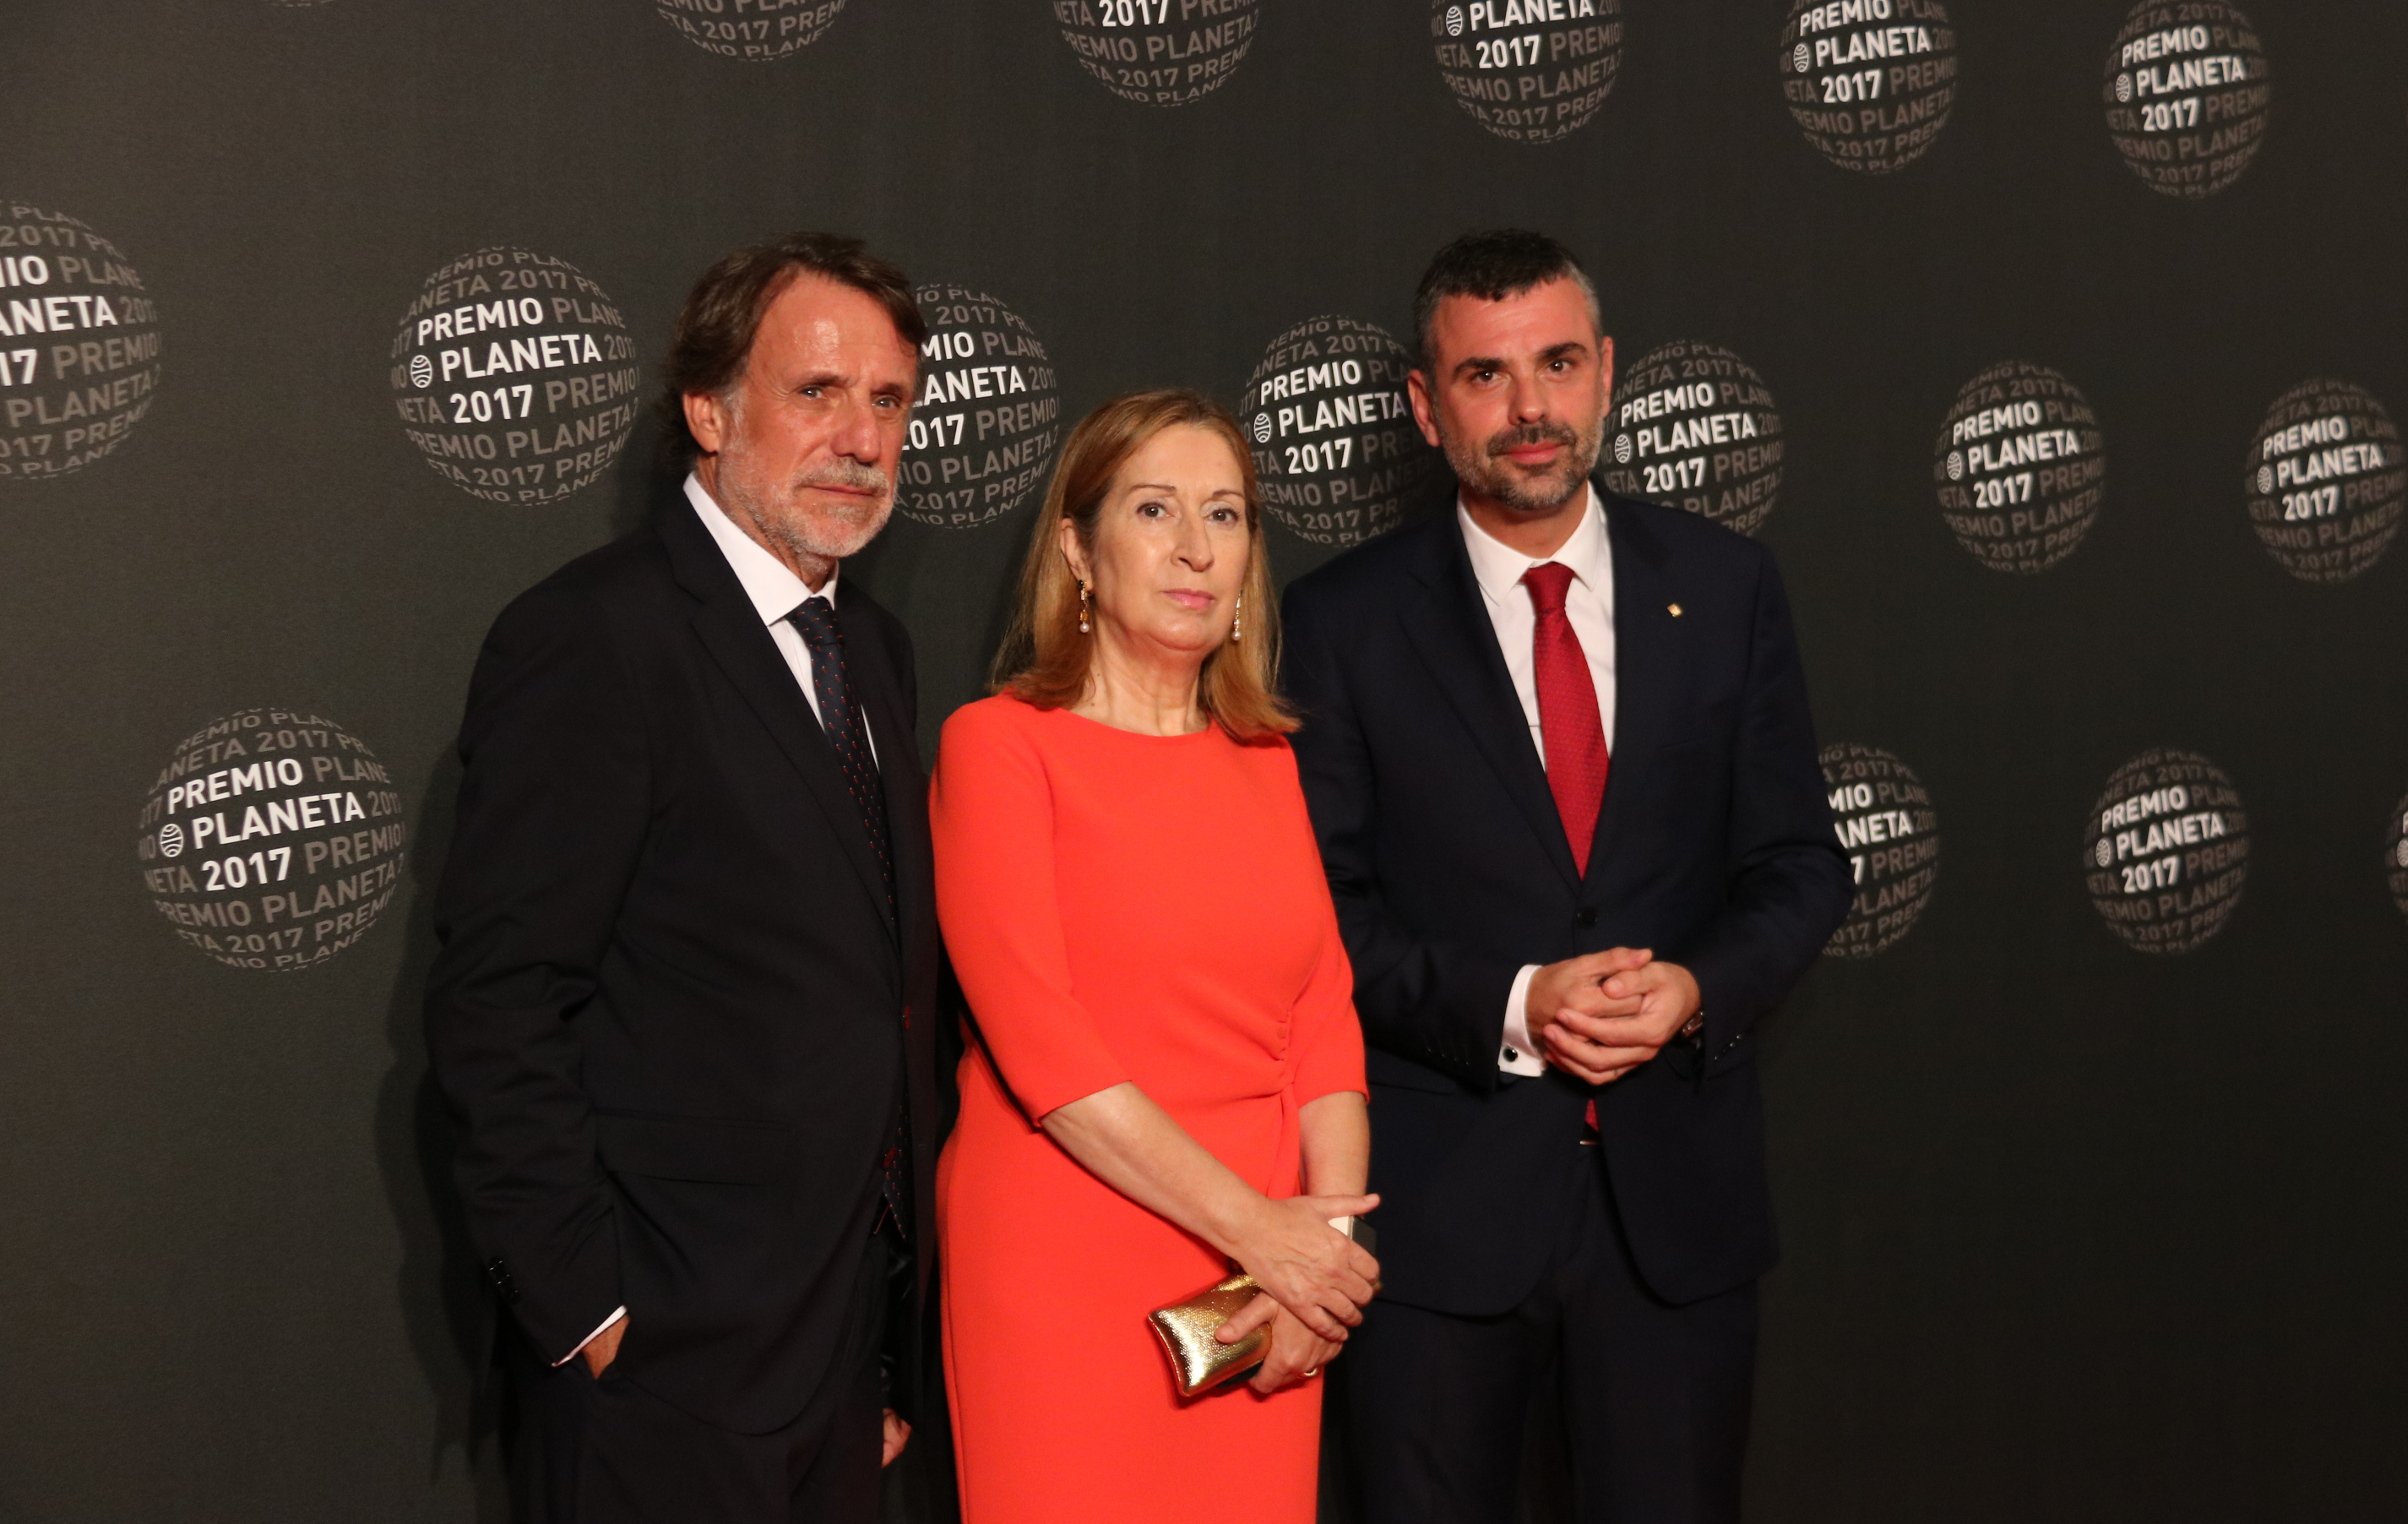 Santi Vila i Ana Pastor es van reunir diumenge a la gala del Premi Planeta